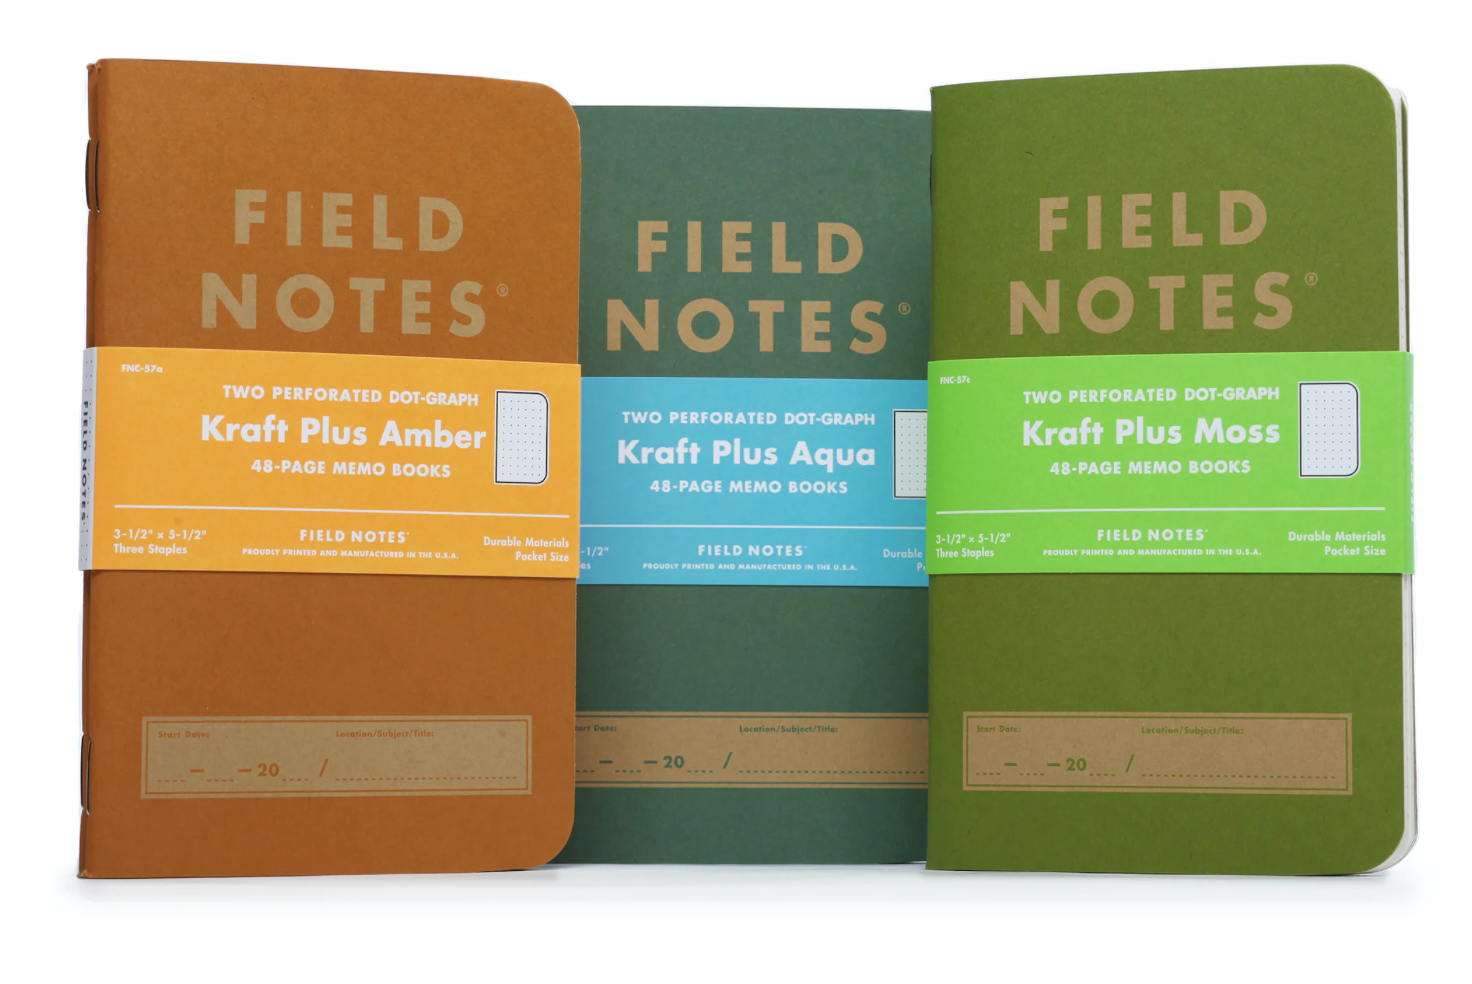 Field Notes Original Kraft